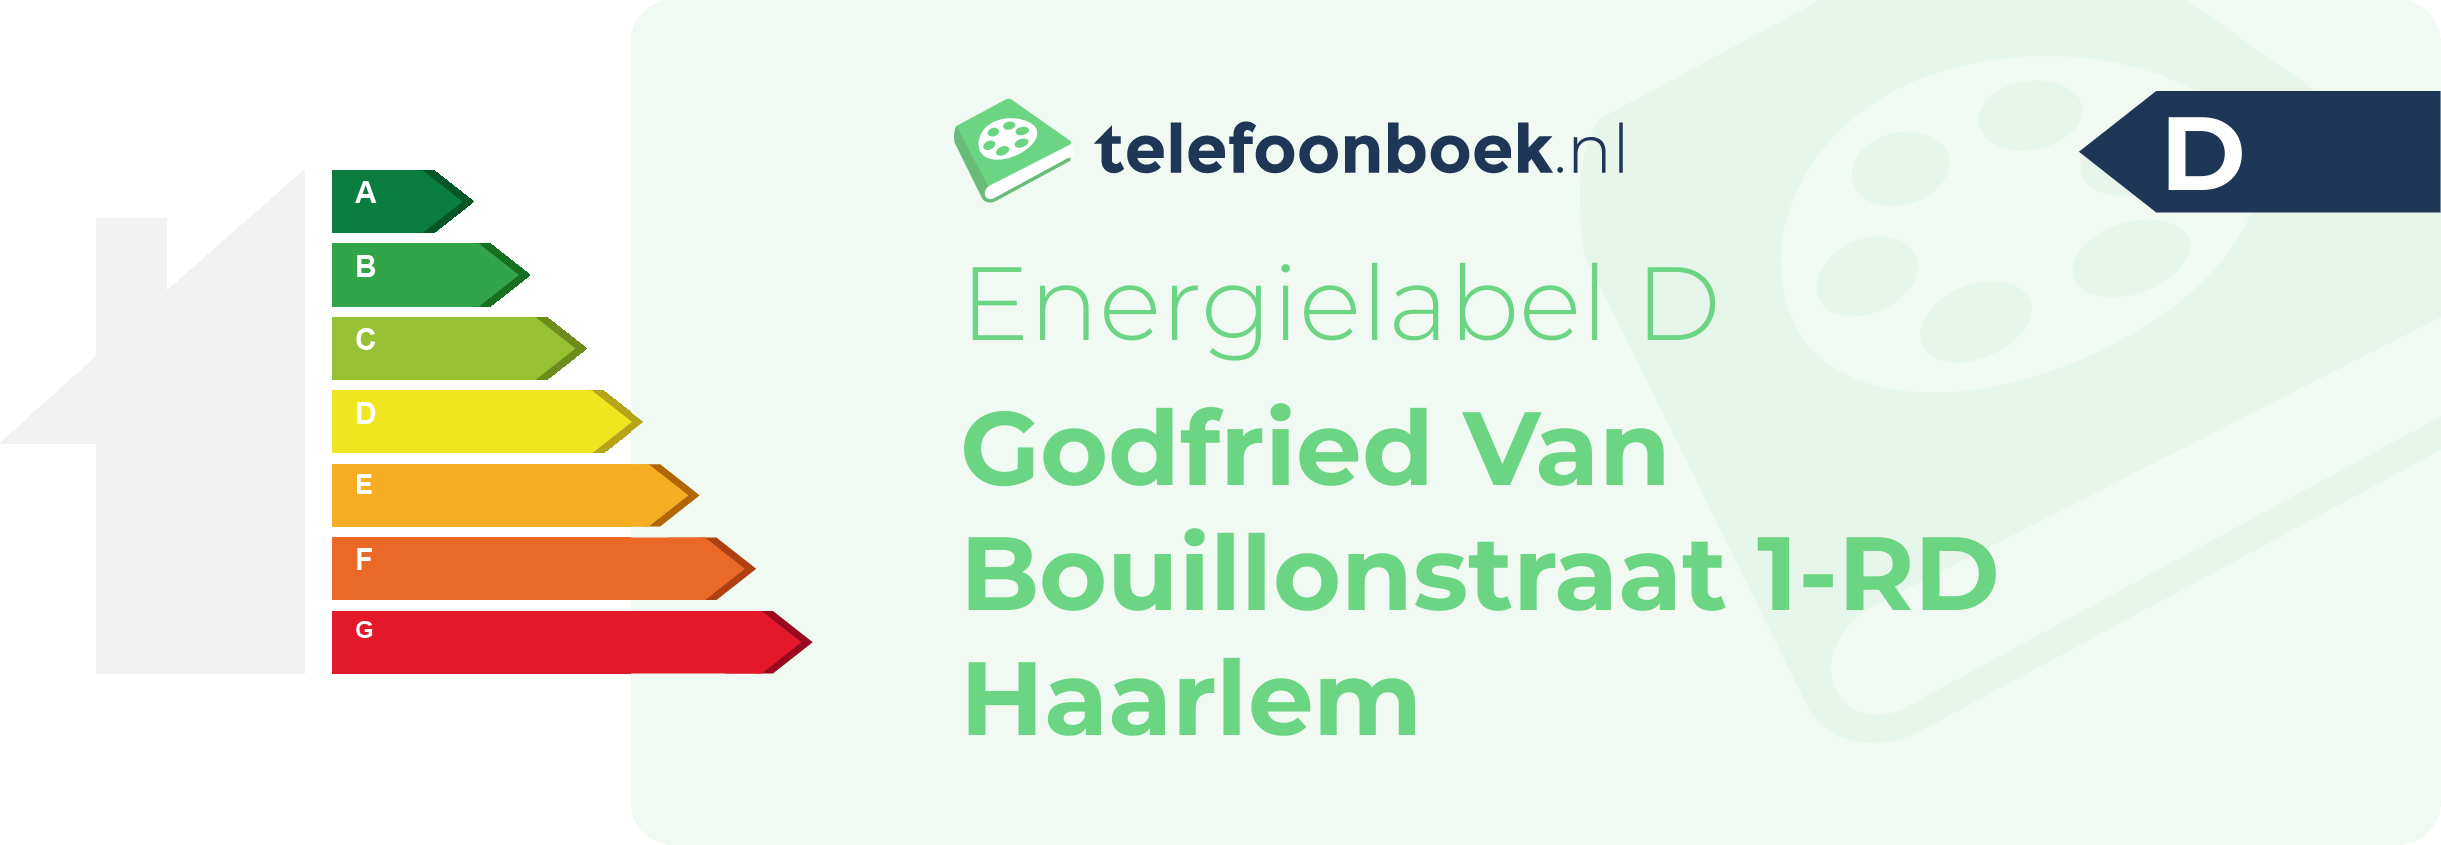 Energielabel Godfried Van Bouillonstraat 1-RD Haarlem